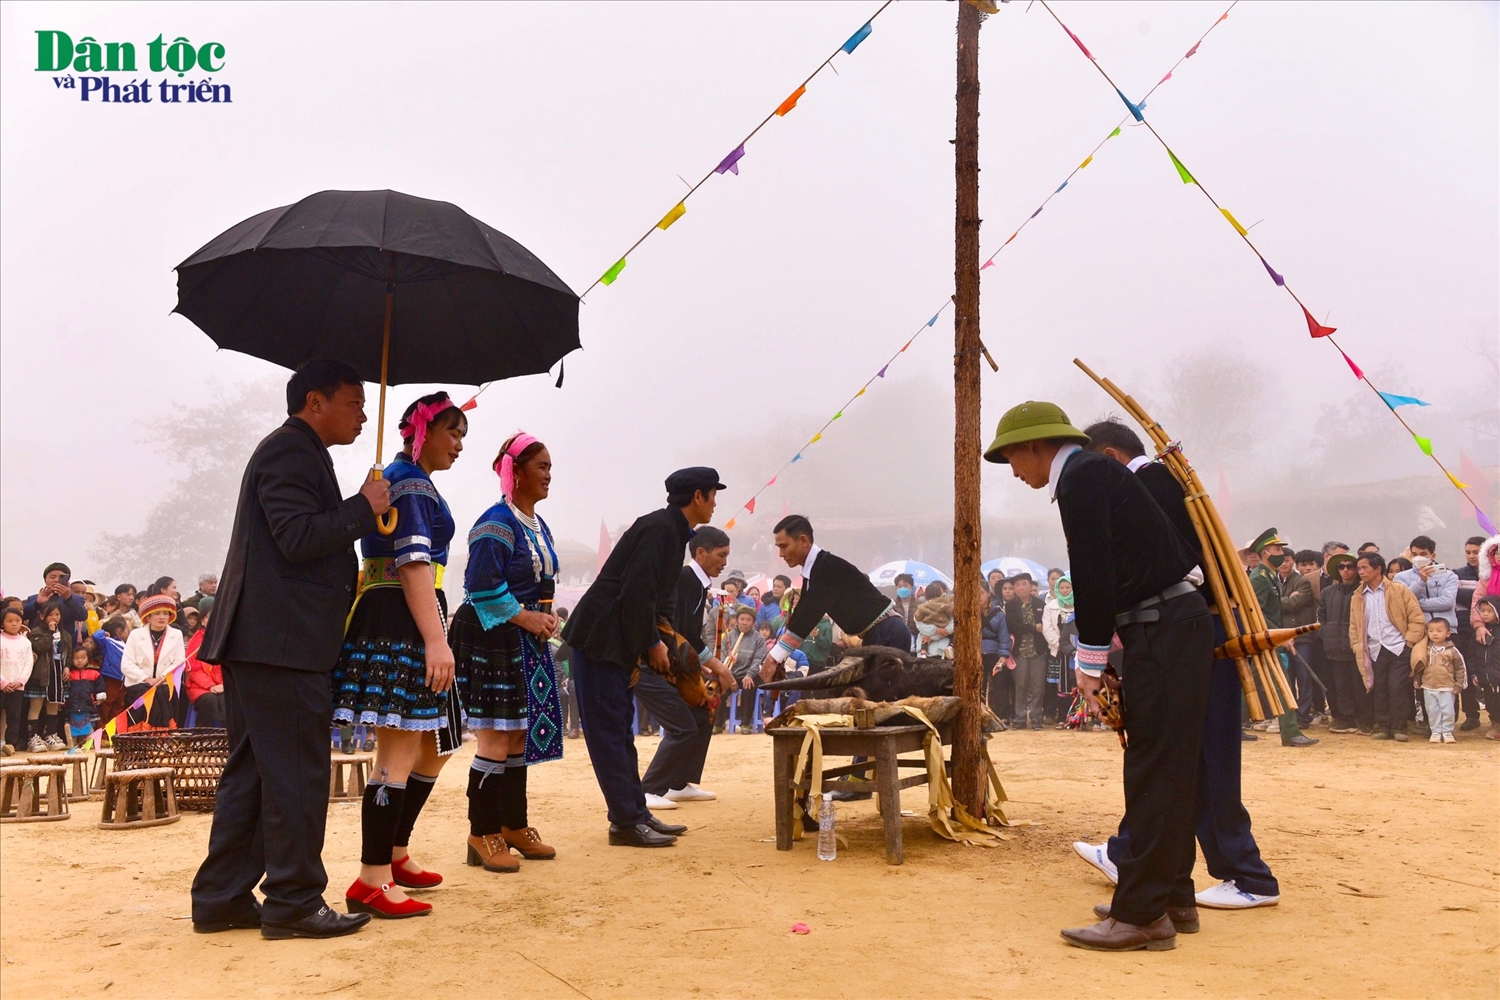 Lễ hội Gầu Tào còn có tên gọi khác là hội “Sải Sán”, là một lễ hội truyền thống của đồng bào Mông được tổ chức vào dịp tháng Giêng với ý nghĩa cầu cho mùa màng bội thu, người người khỏe mạnh, nhà nhà có cuộc sống ấm no, hạnh phúc.